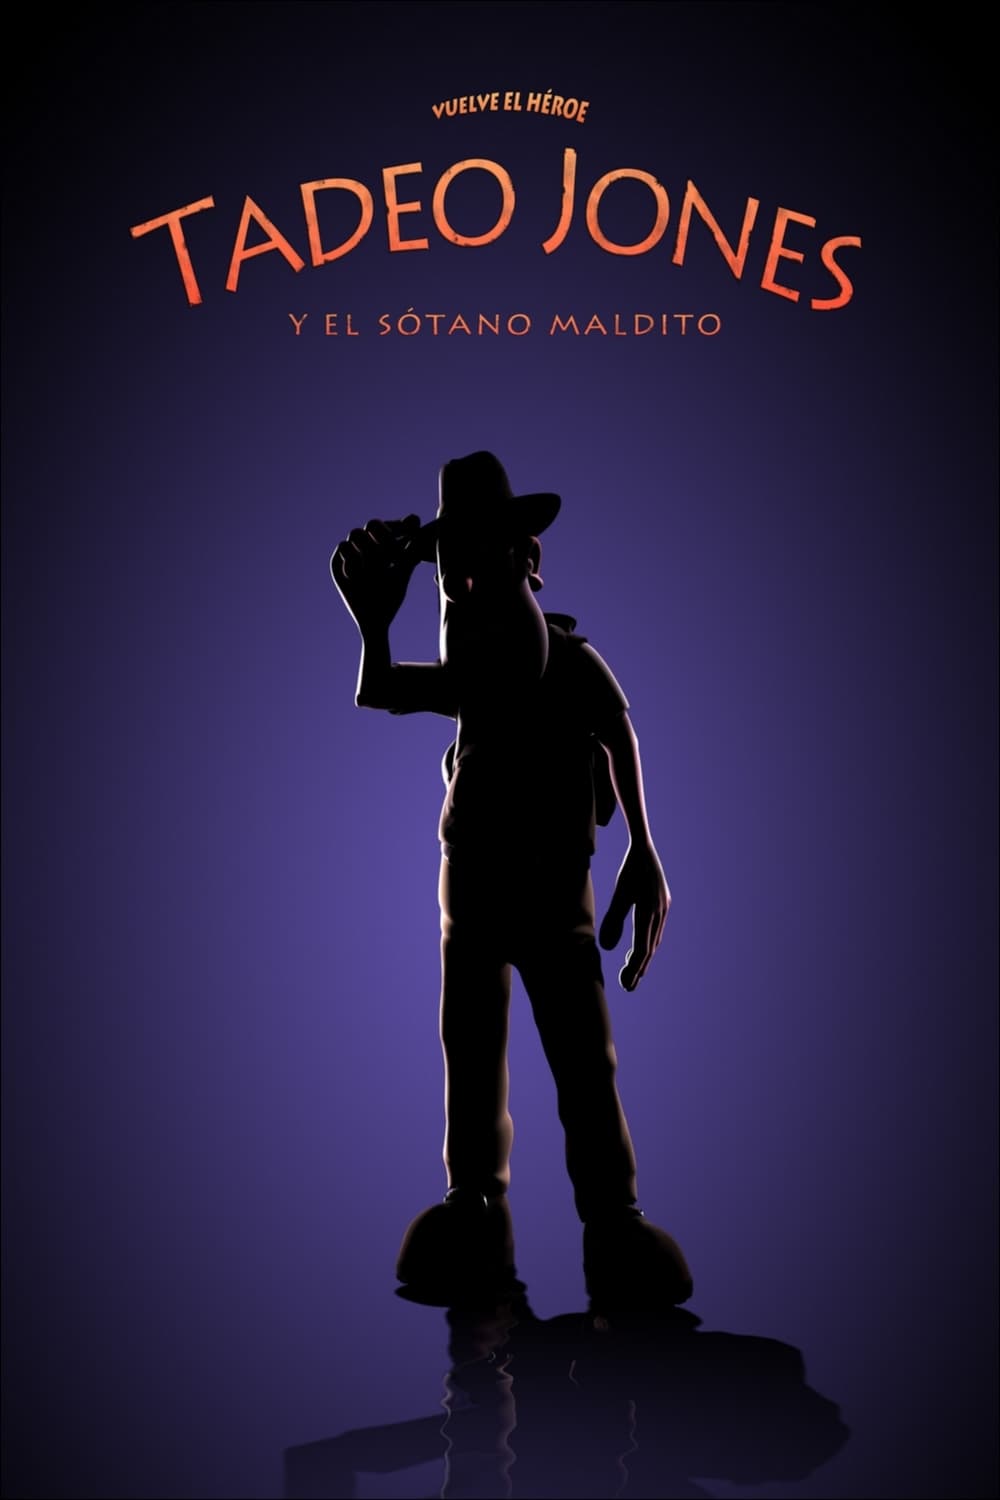 Tadeo Jones y el sótano maldito (2007)